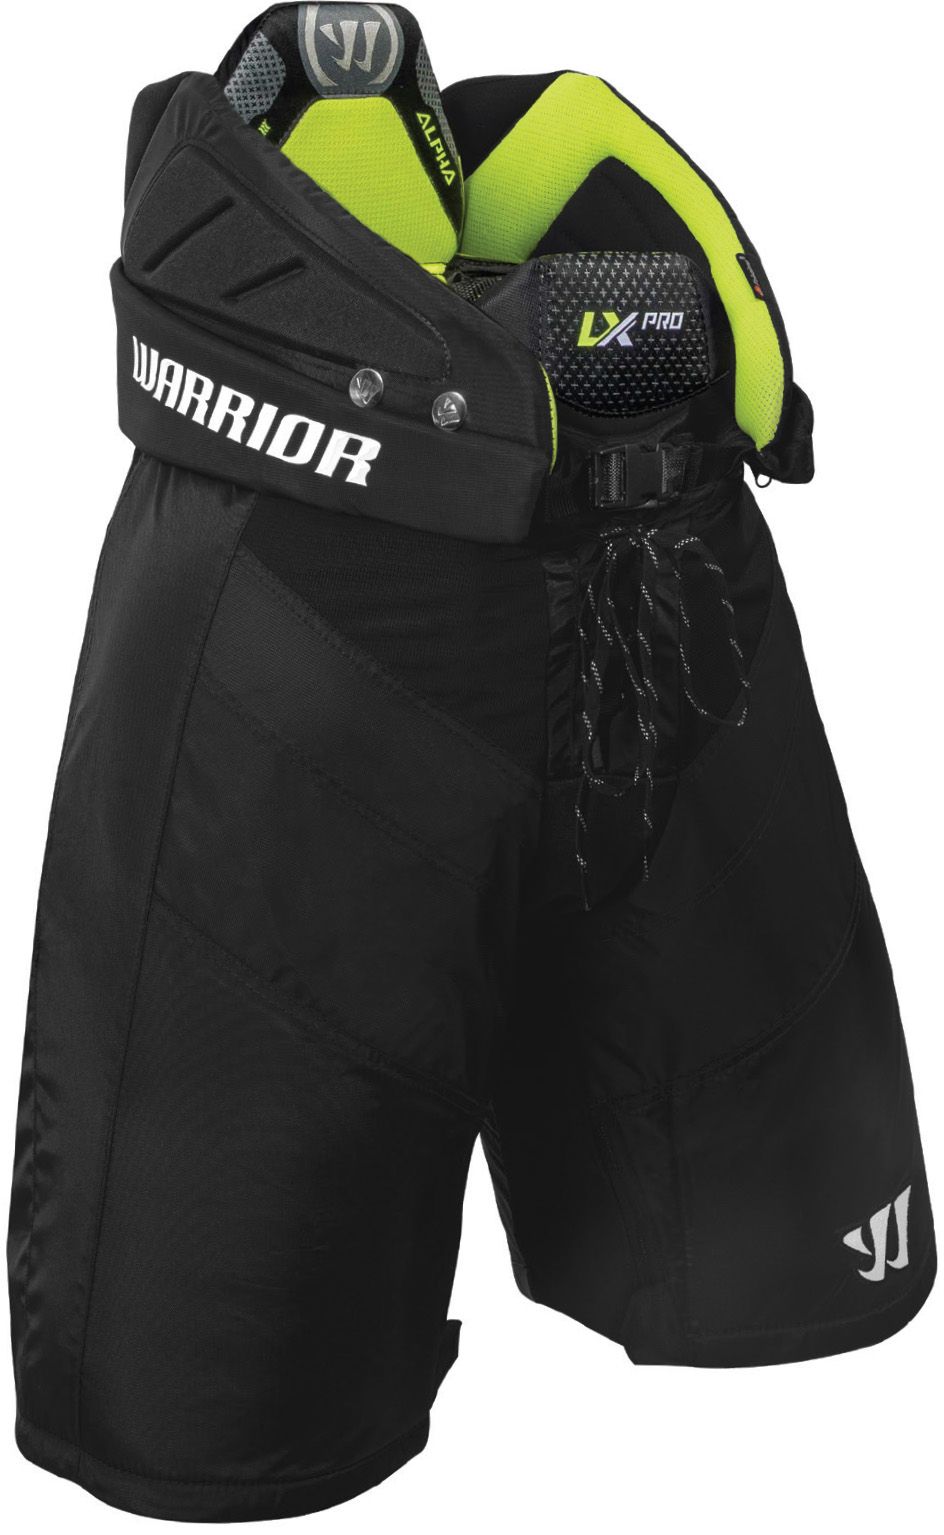 Warrior Hockey Alpha LX Pro Pants